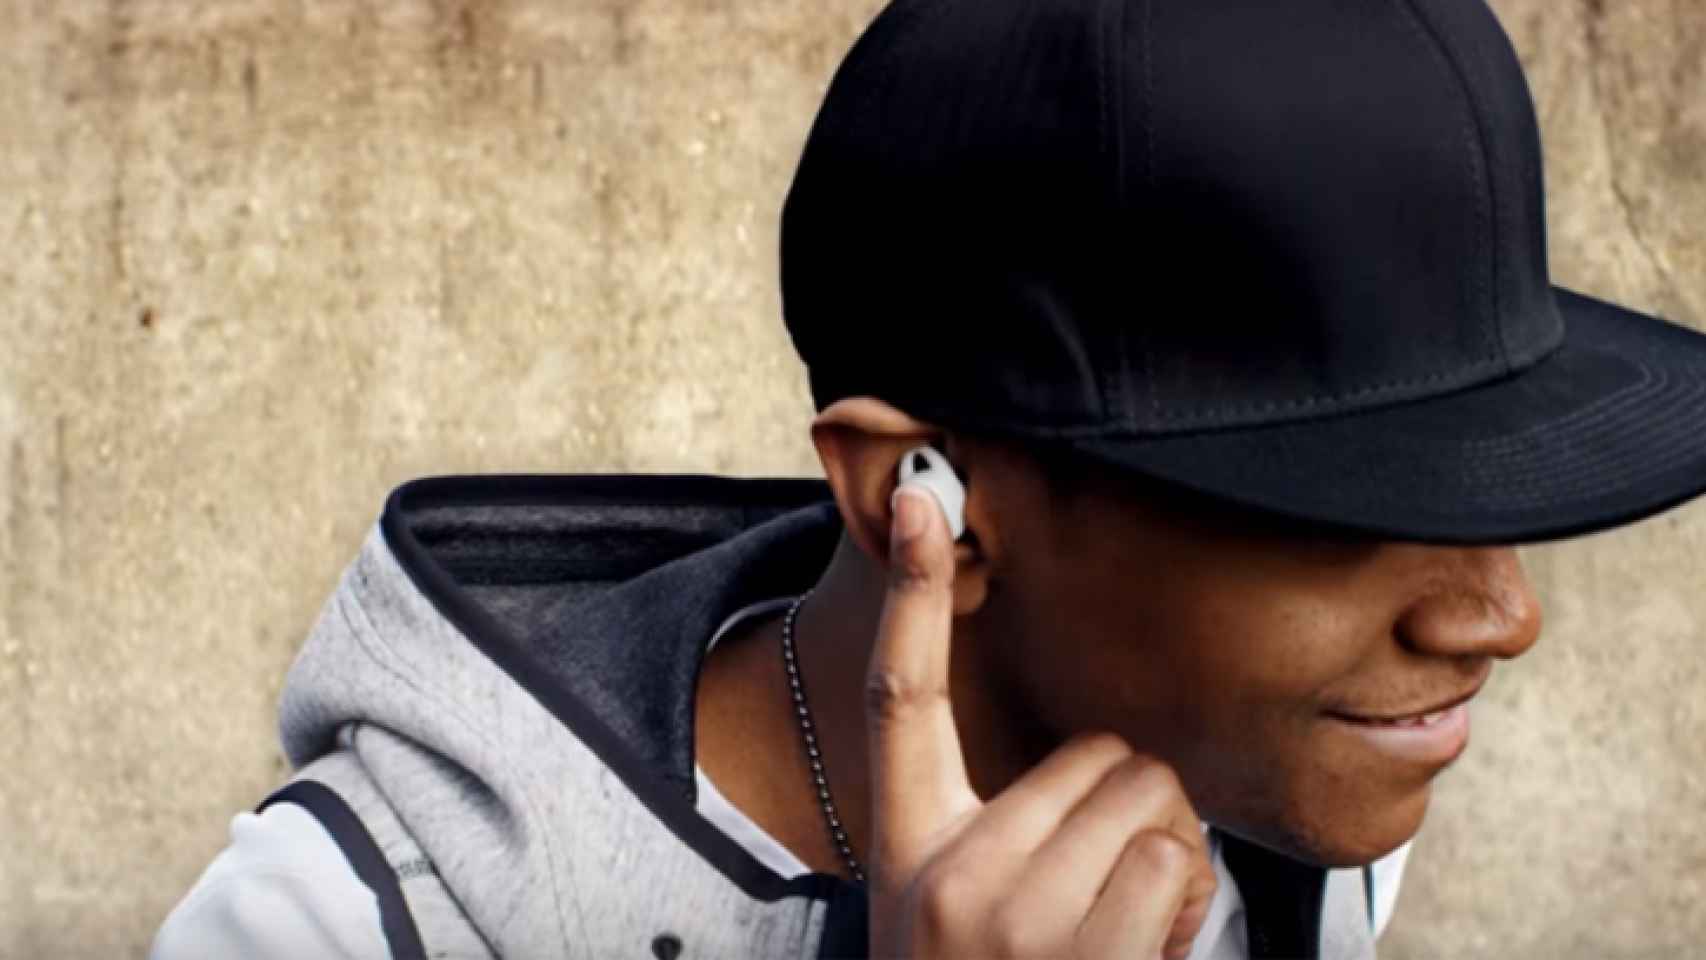 El Galaxy Note 8 vendrá acompañado de unos auriculares inteligentes con Bixby